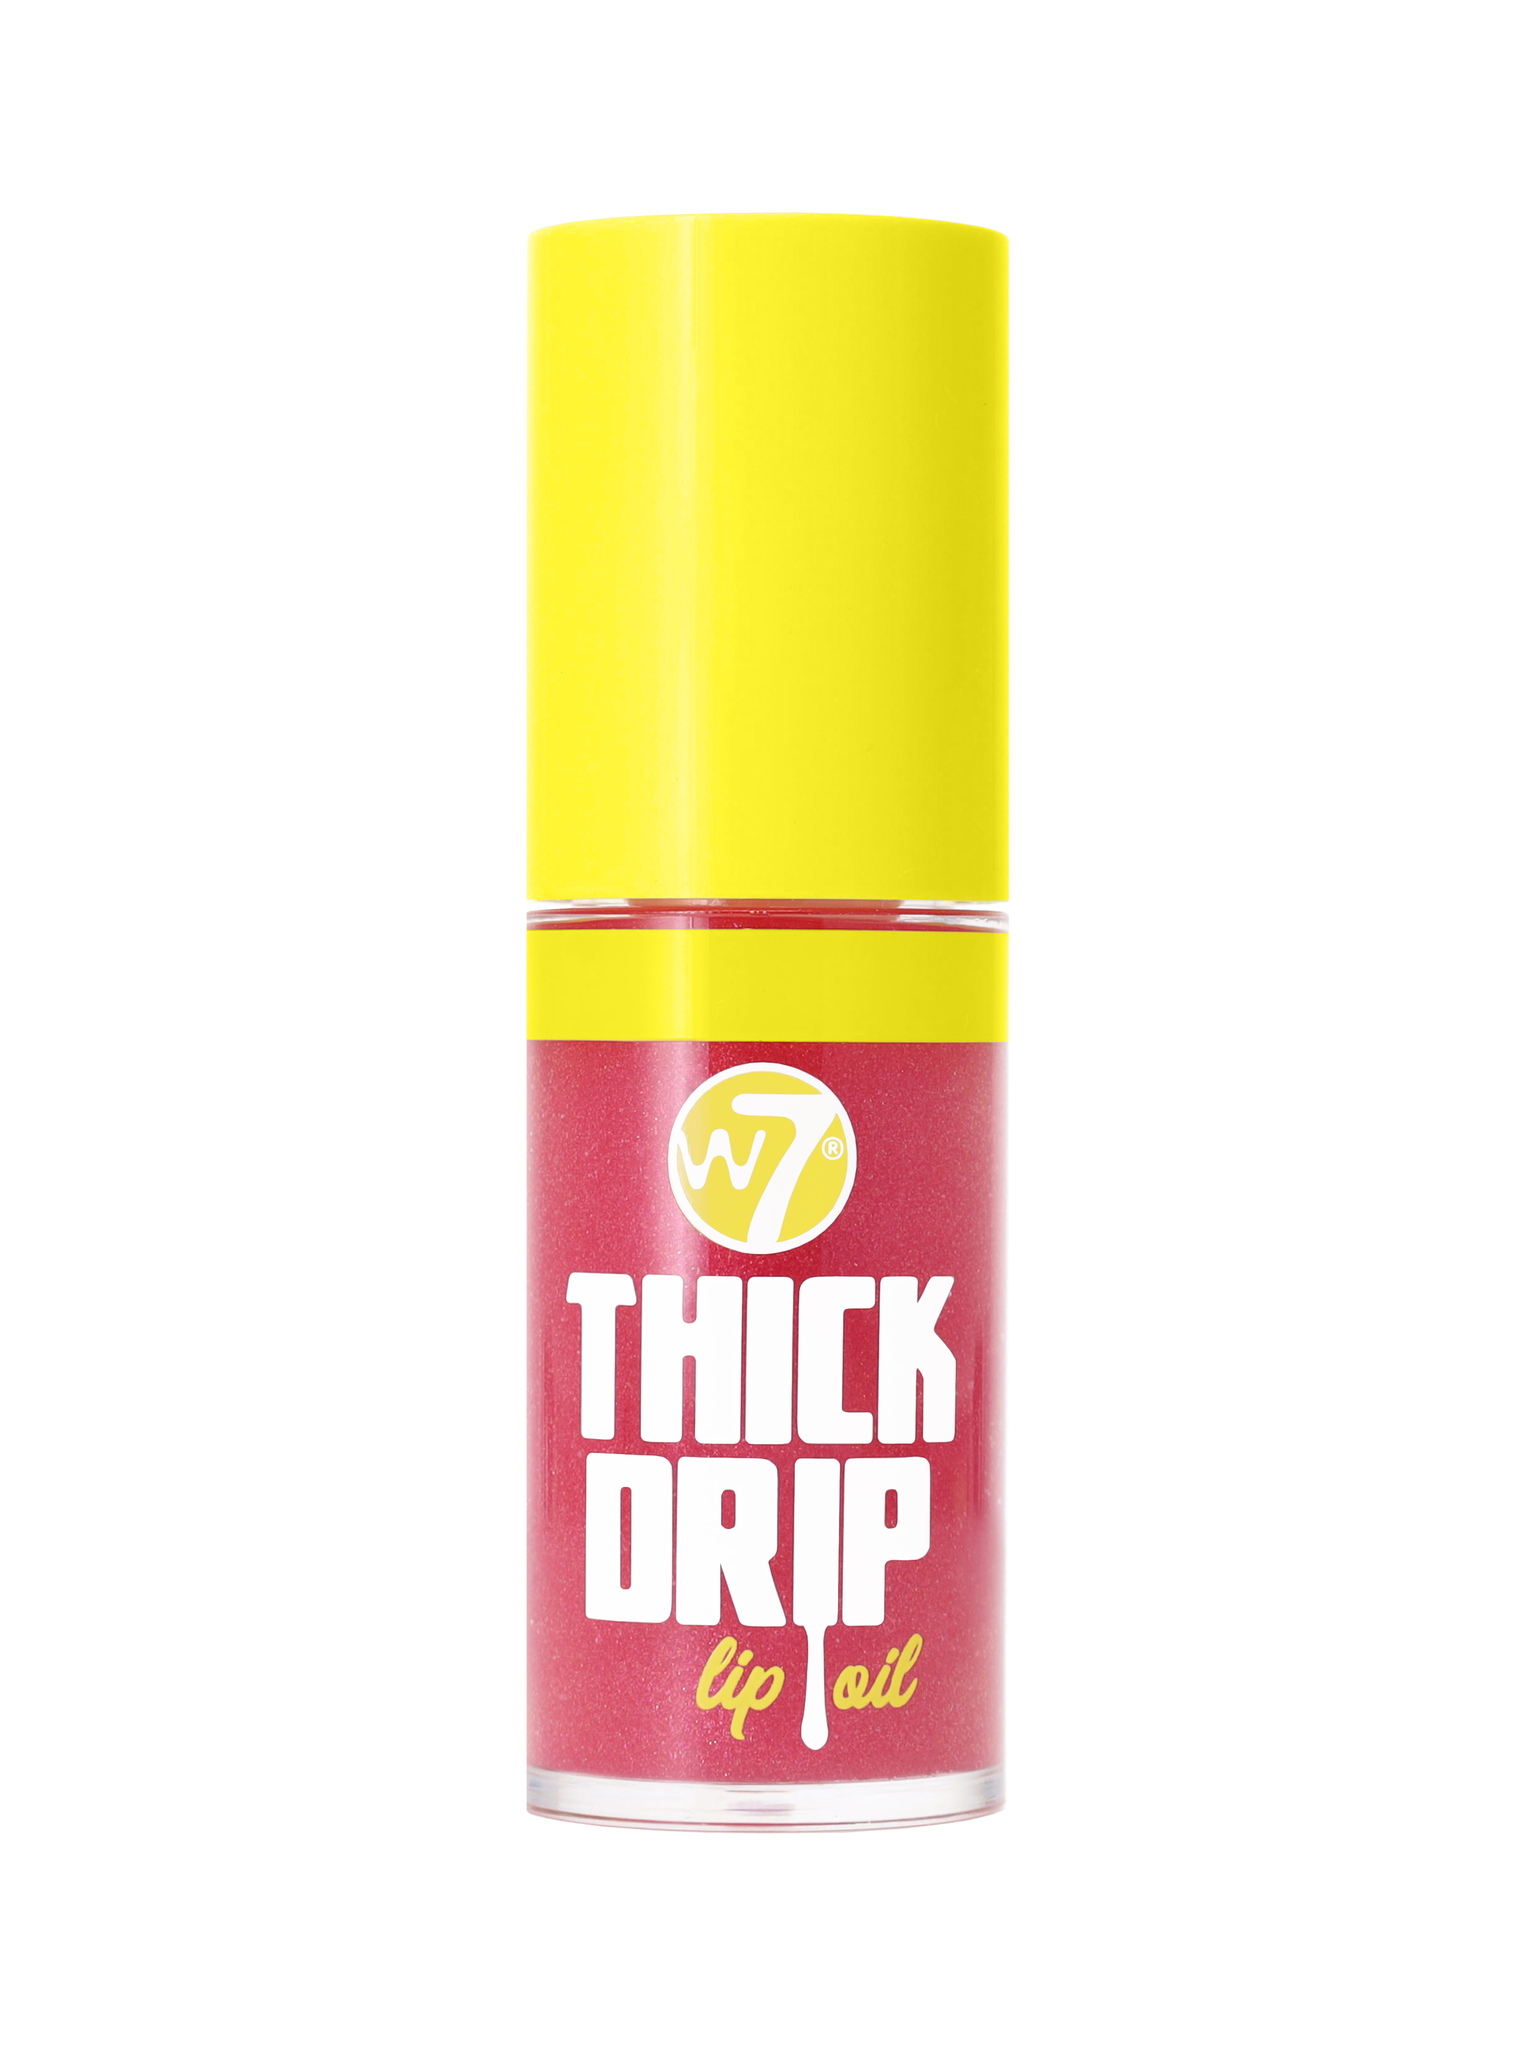 W7 THICK DRIP Lip Oil - Foolish